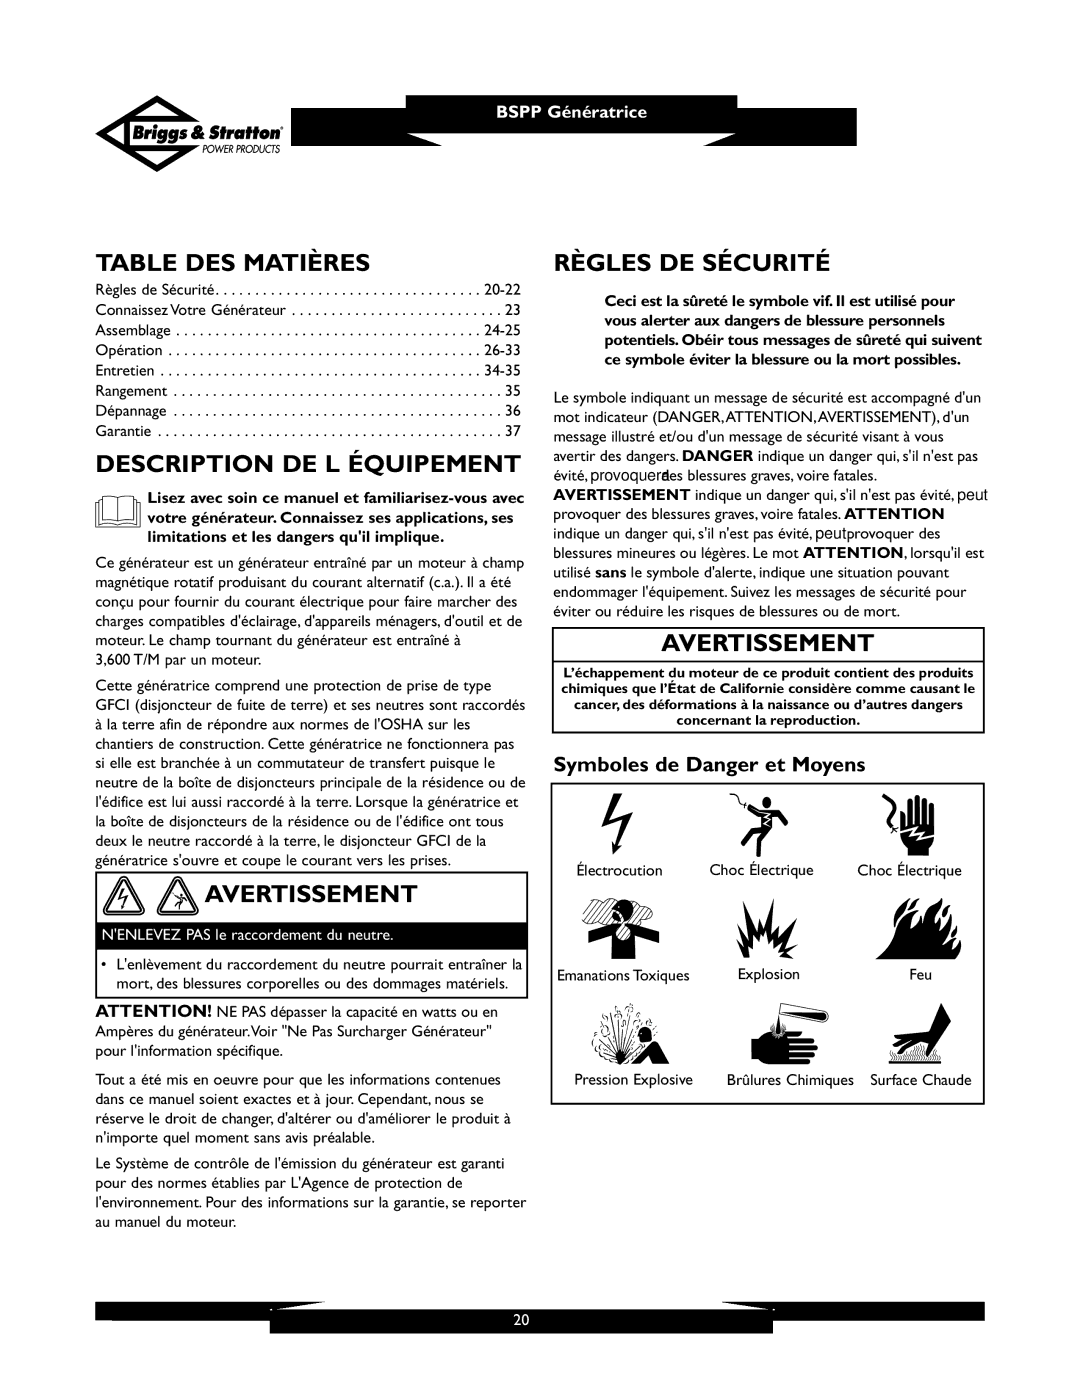 Briggs & Stratton PRO6500 owner manual Table DES Matières, Description DE L Équipement, Avertissement, Règles DE Sécurité 